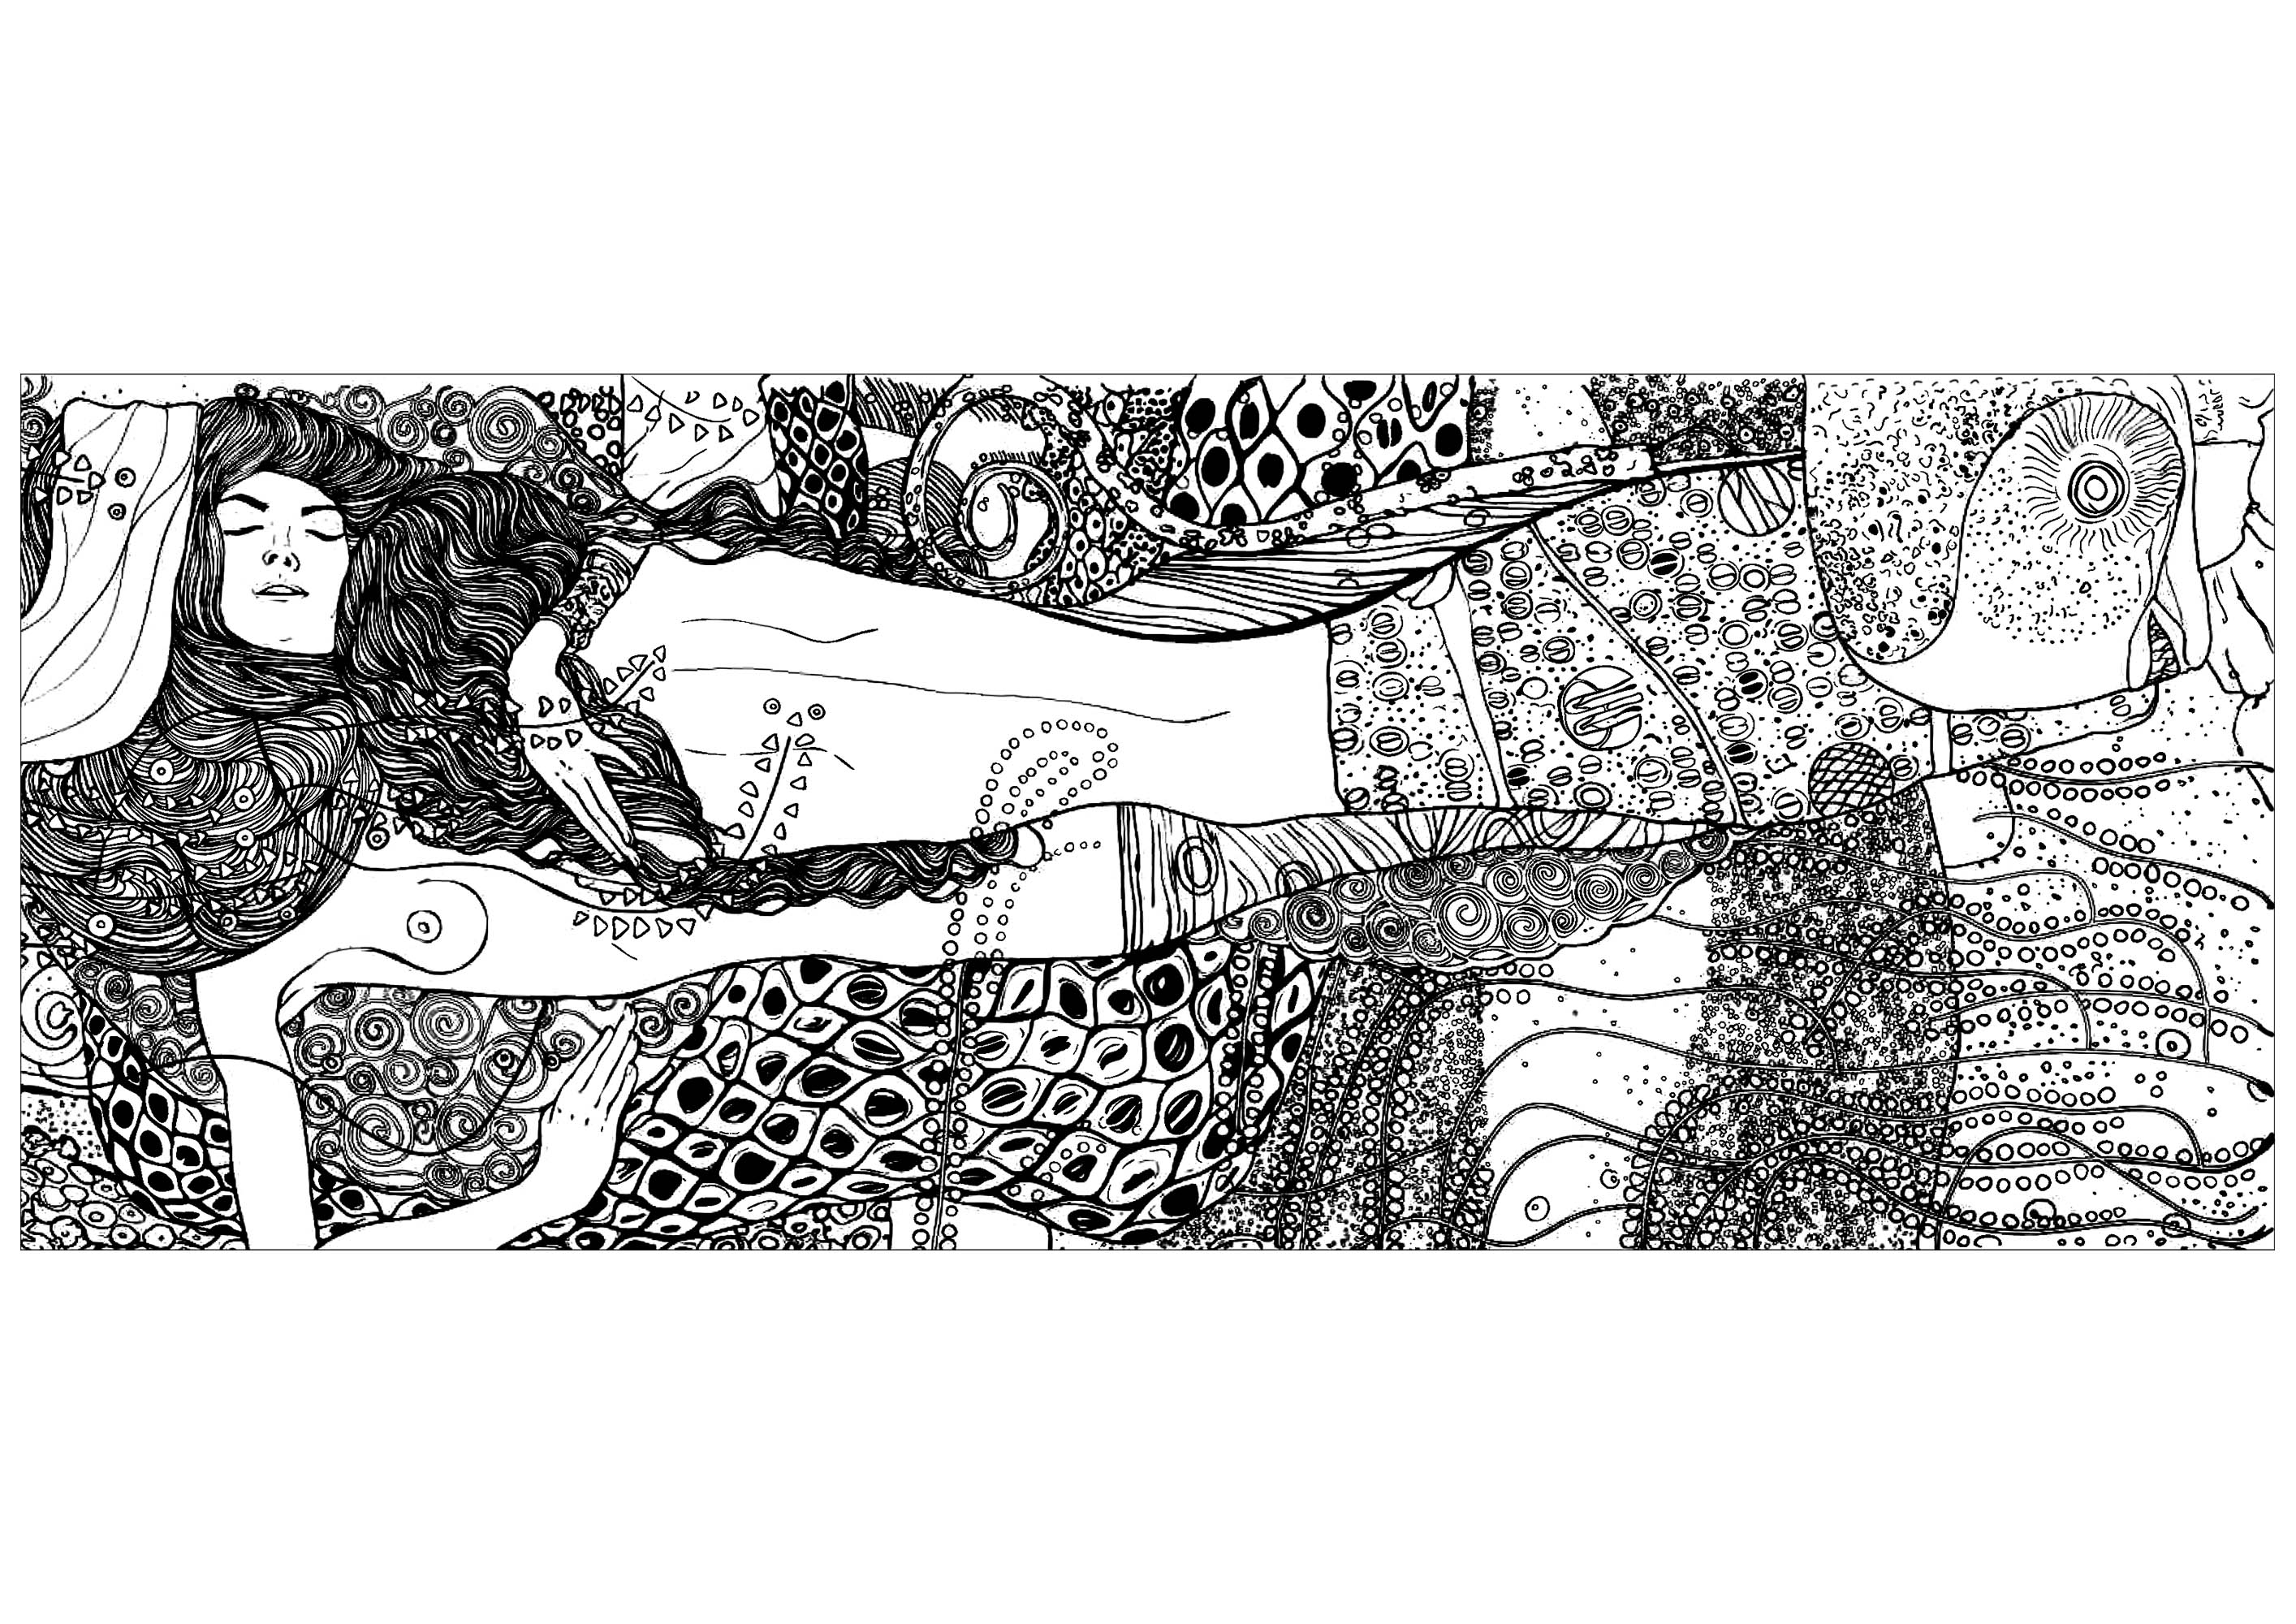 Página para colorir criada a partir do quadro 'Serpentes de água I' de Gustav Klimt